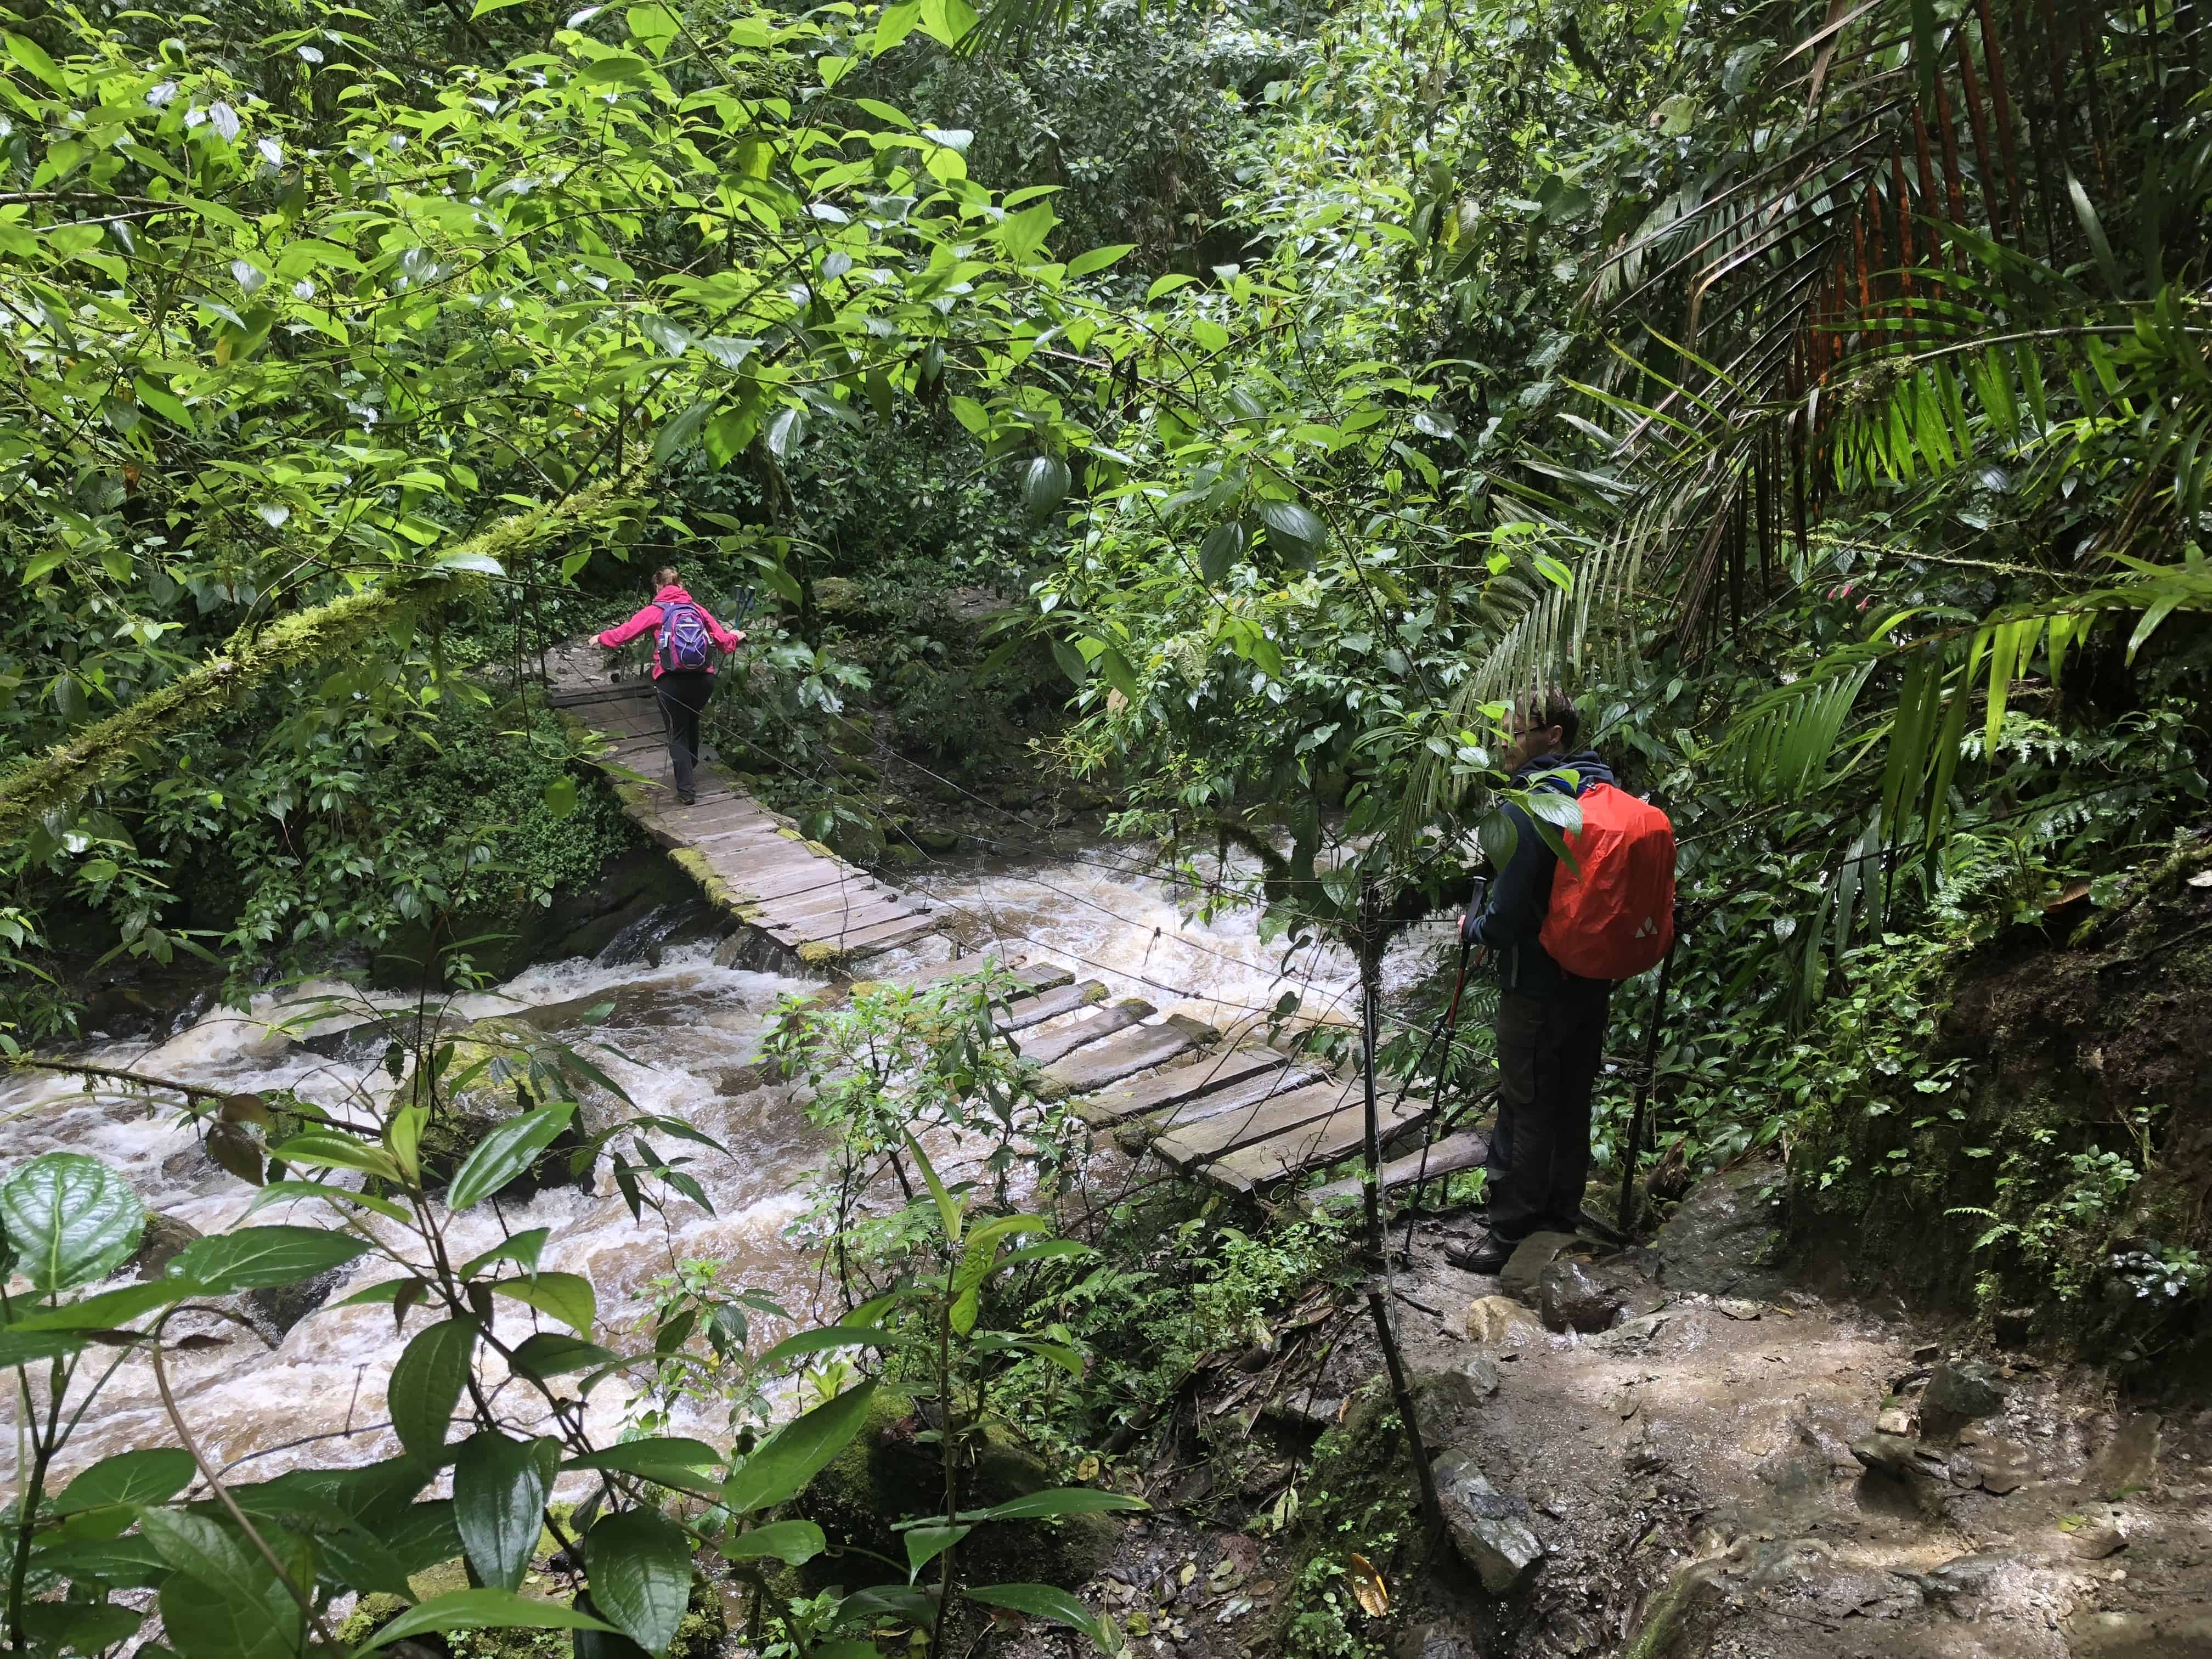 Suspension bridge at Cocora Valley in Quindío, Colombia